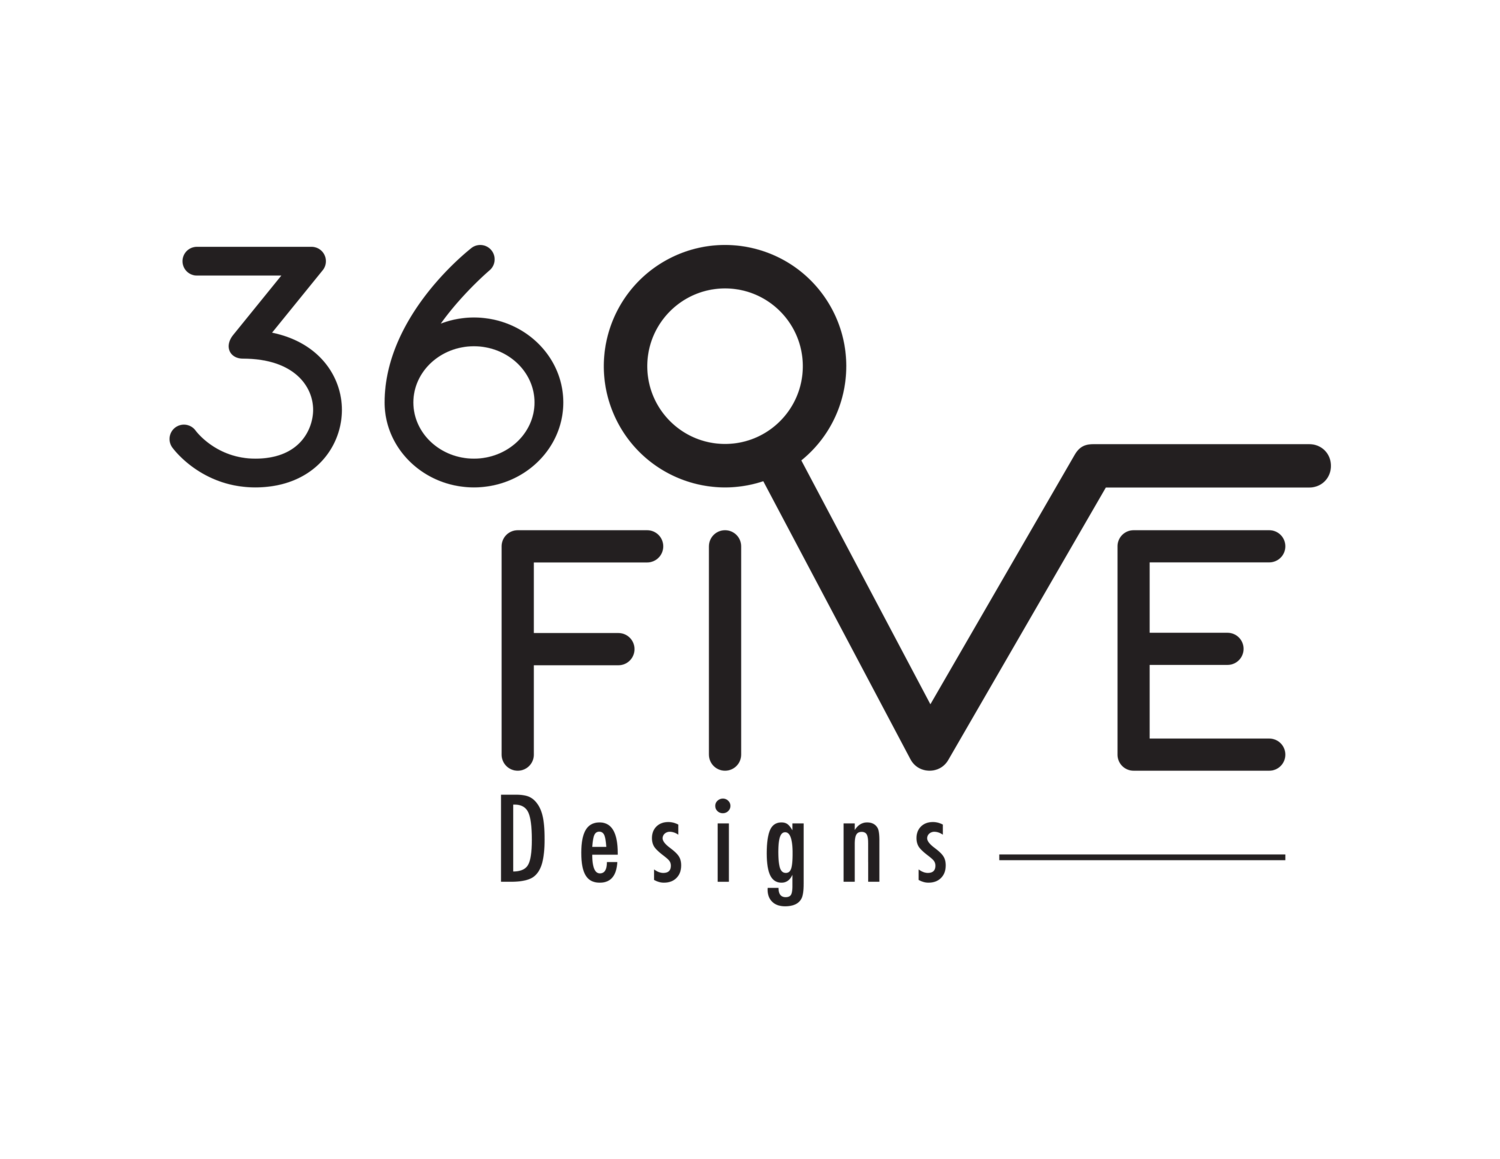 360Five Designs